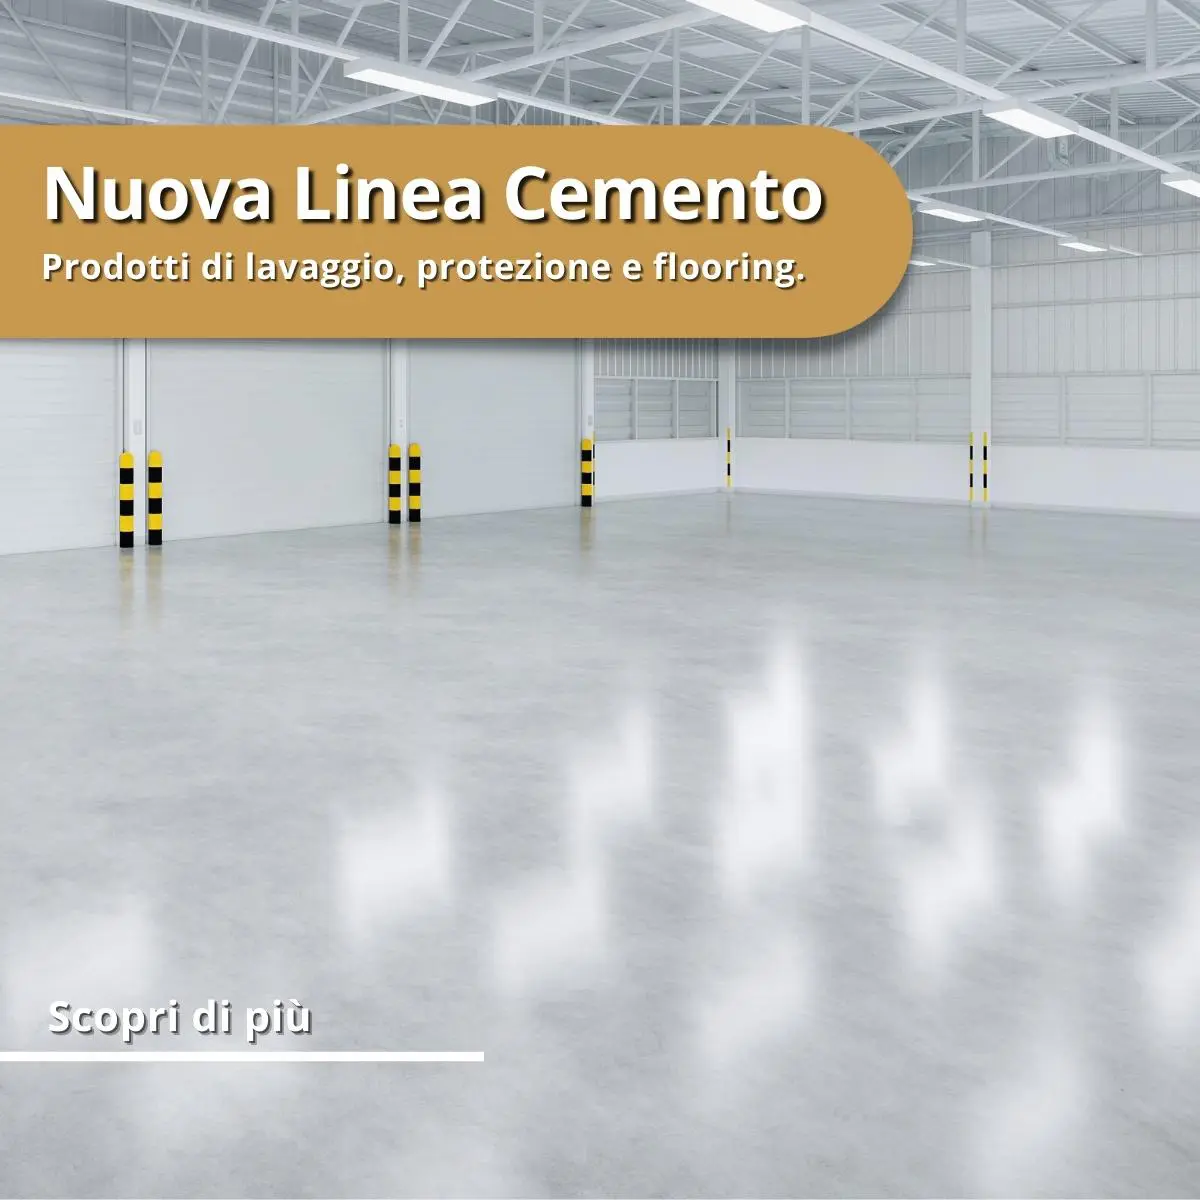 Nuova linea cemento, lavaggio protezione e flooring